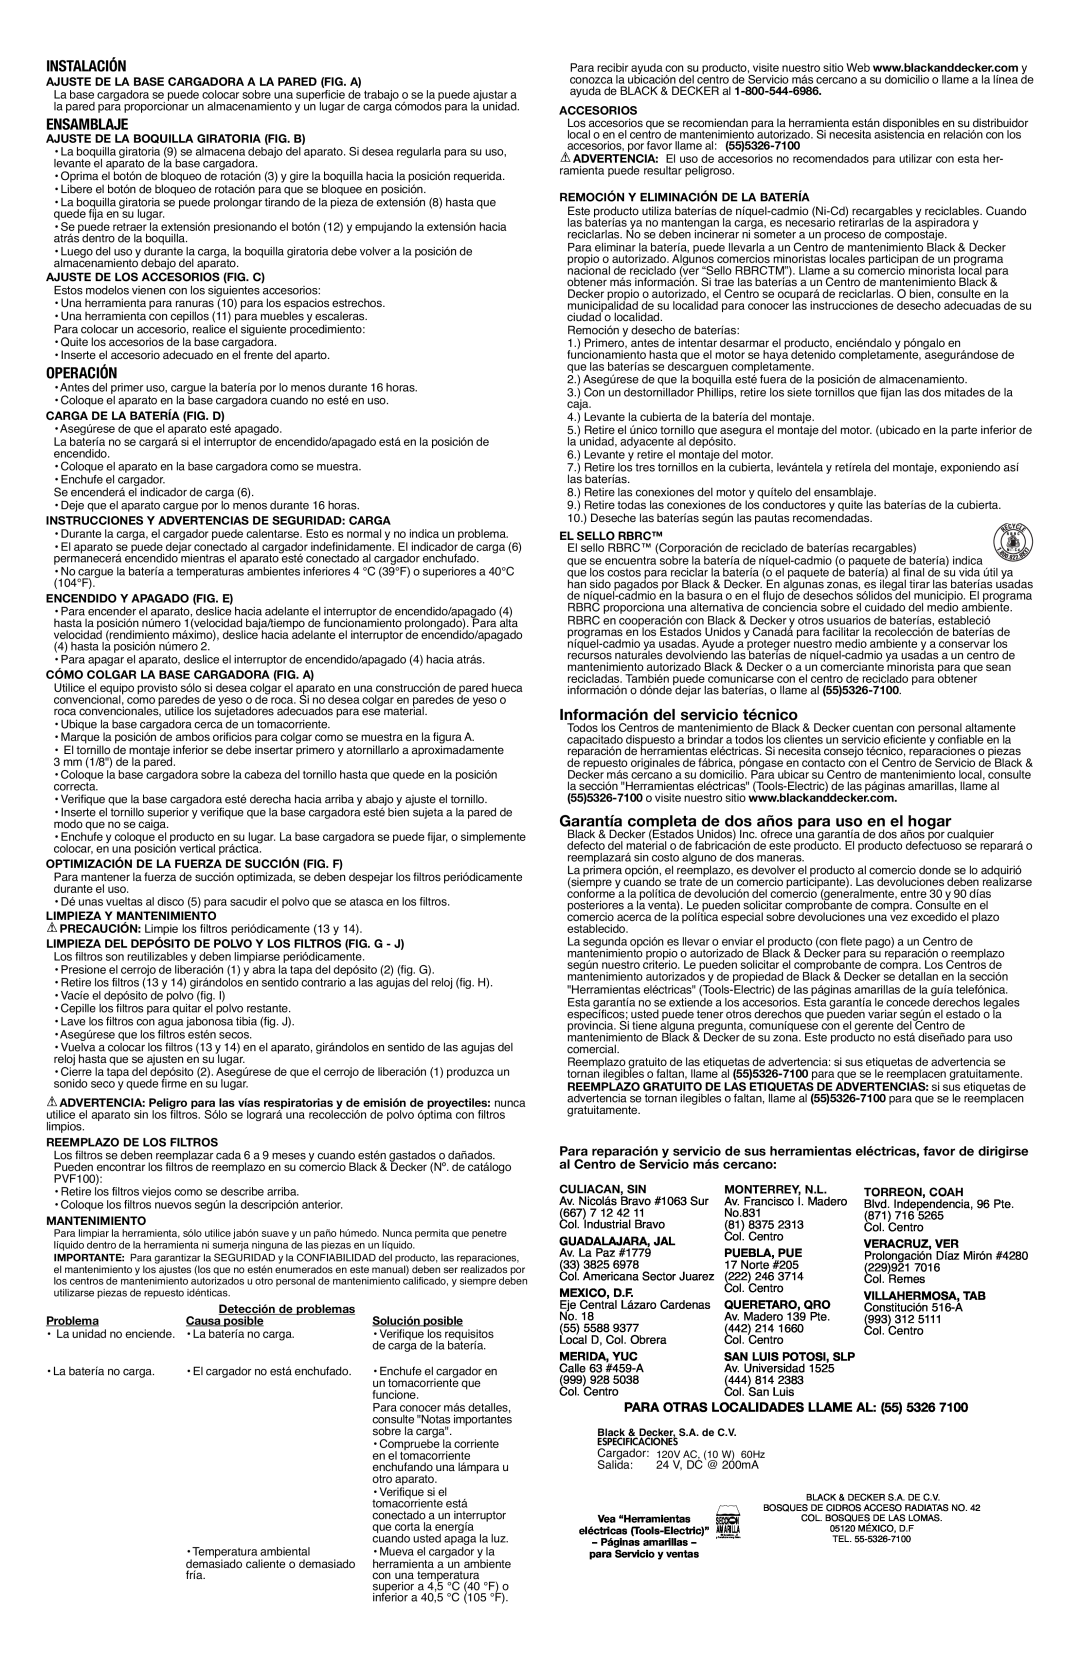 Black & Decker 90500746, PHV1800CB instruction manual Instalación, Ensamblaje, Operación, Información del servicio técnico 